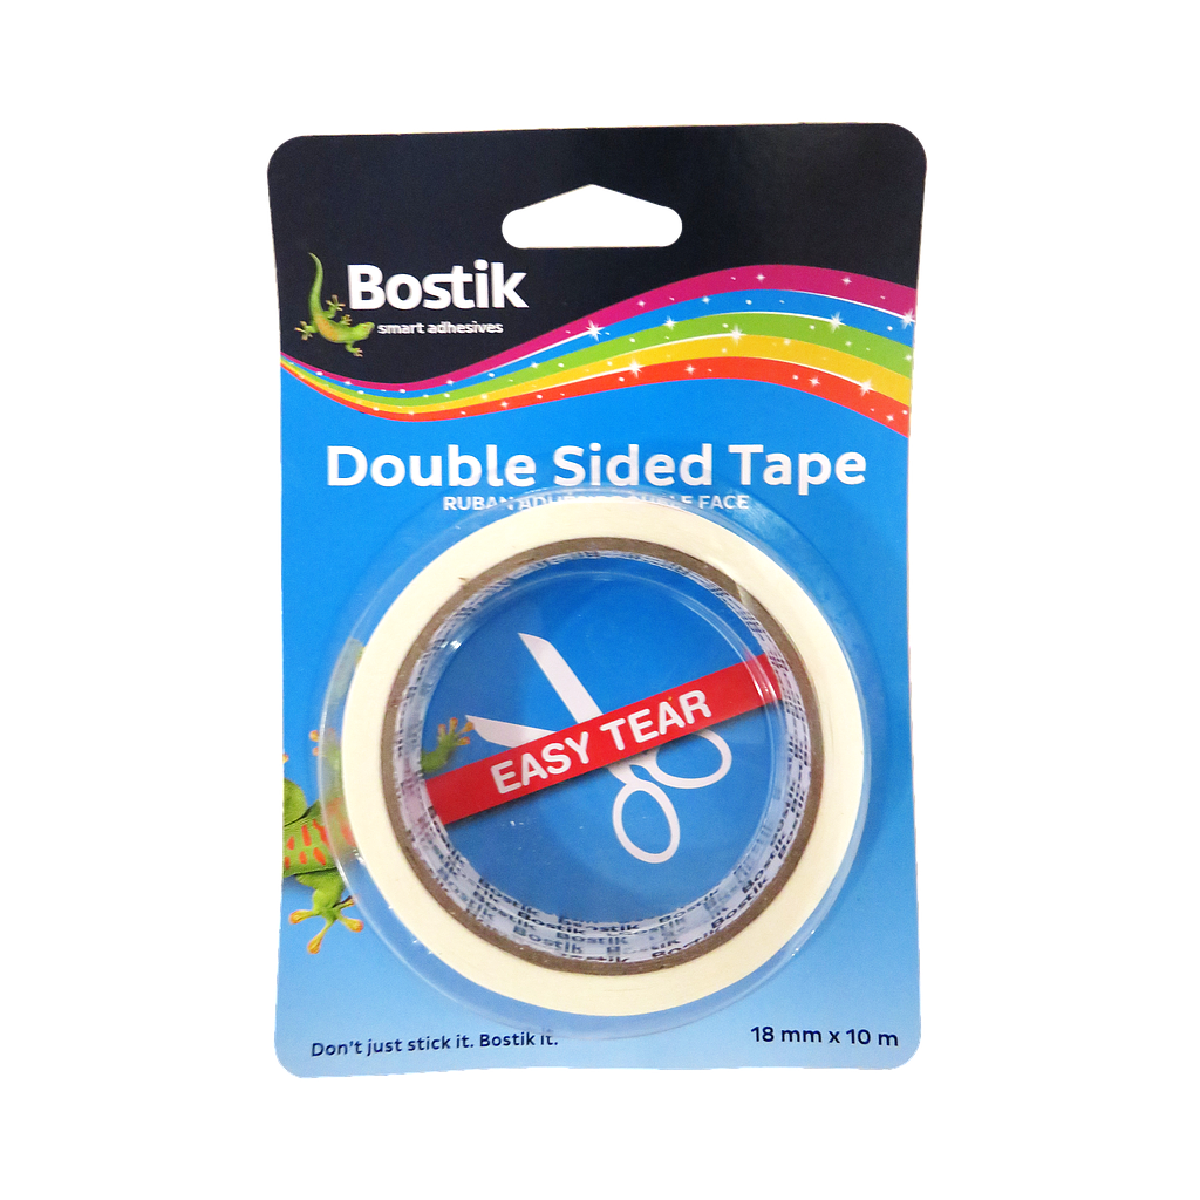 Bostik Double Sided Tape Roll